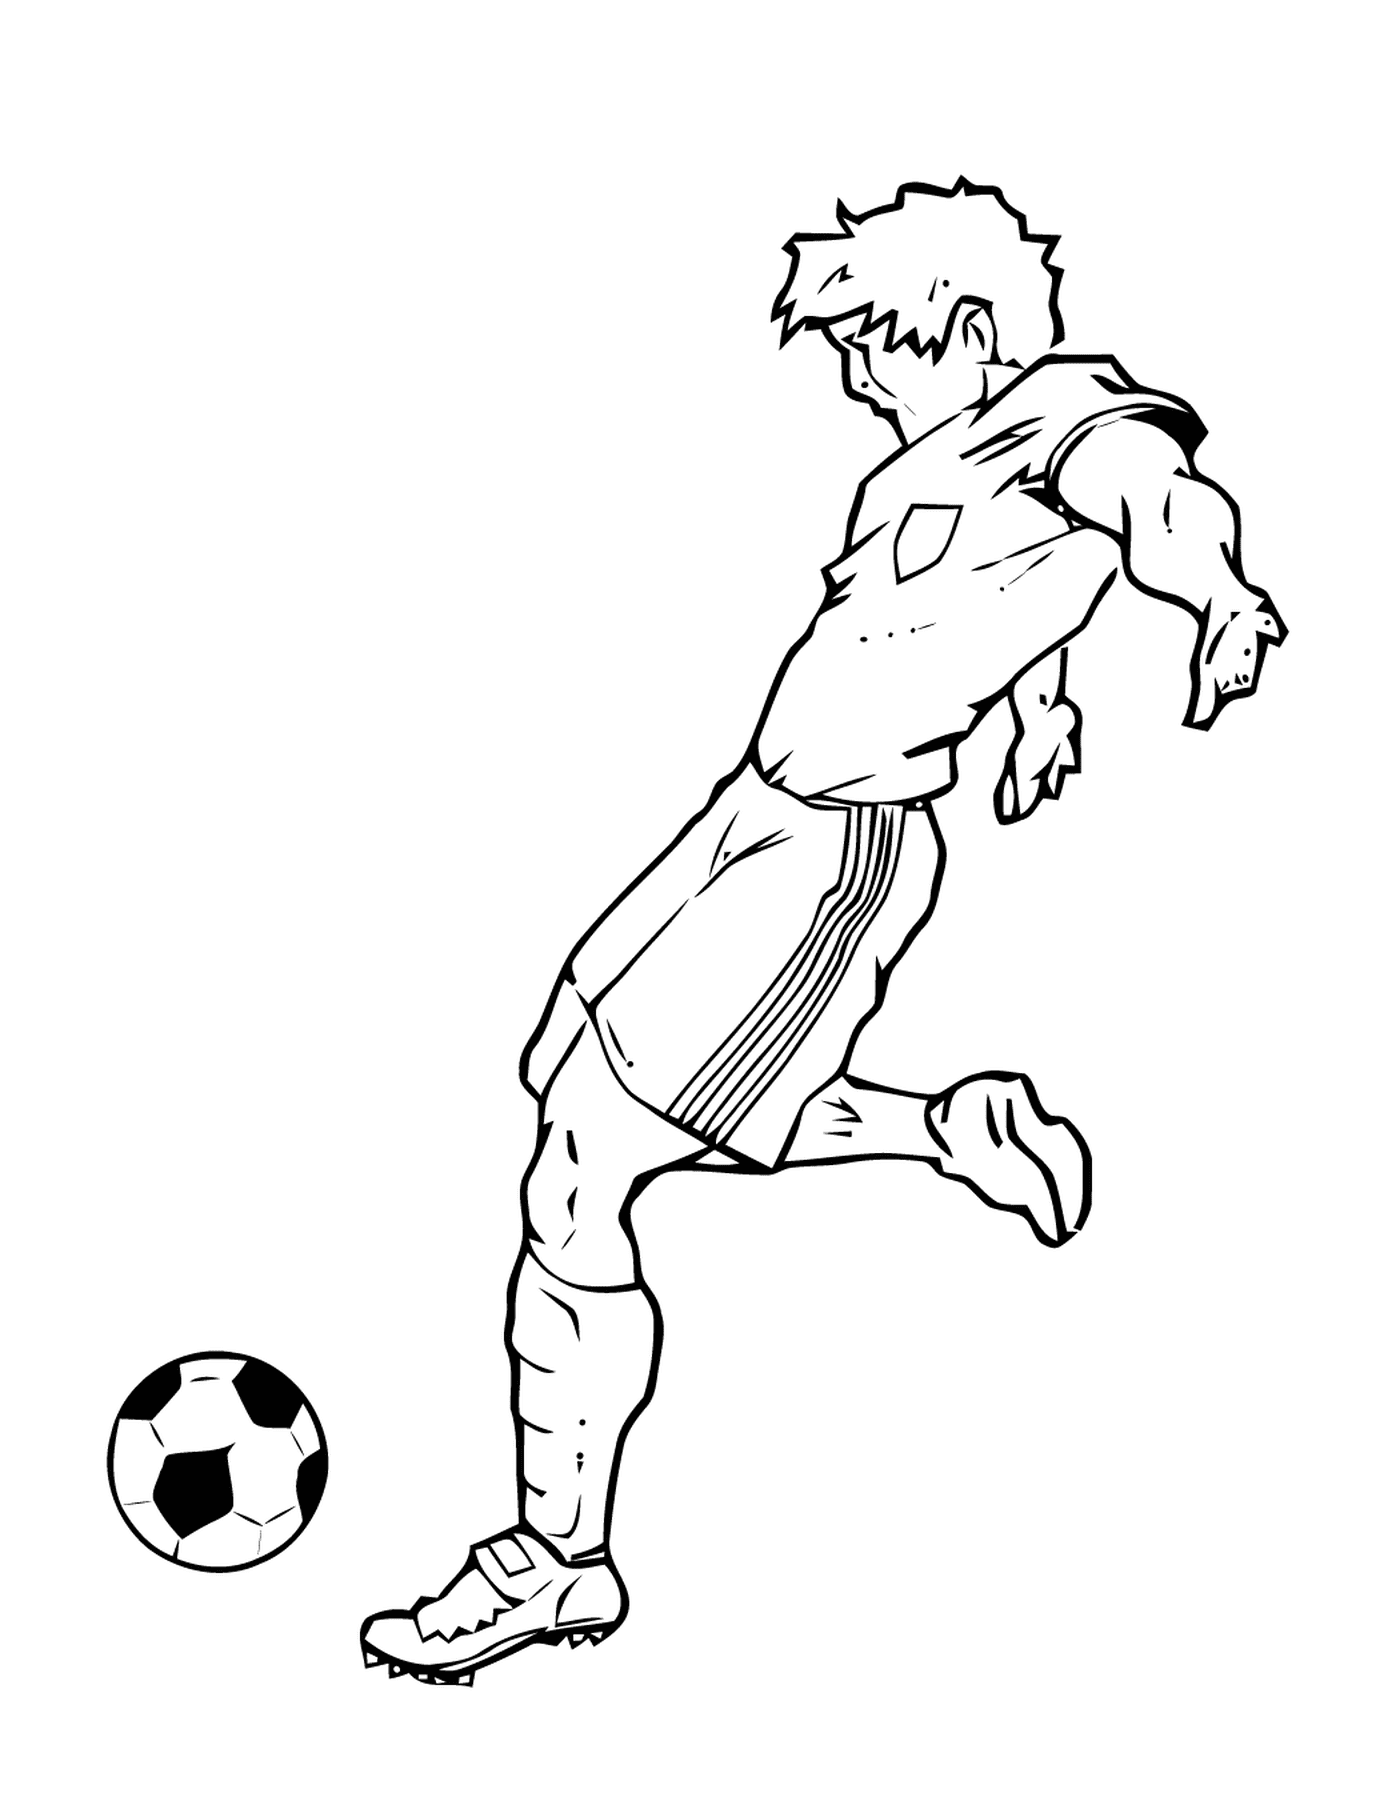   Sport, joueur de foot qui frappe un ballon 